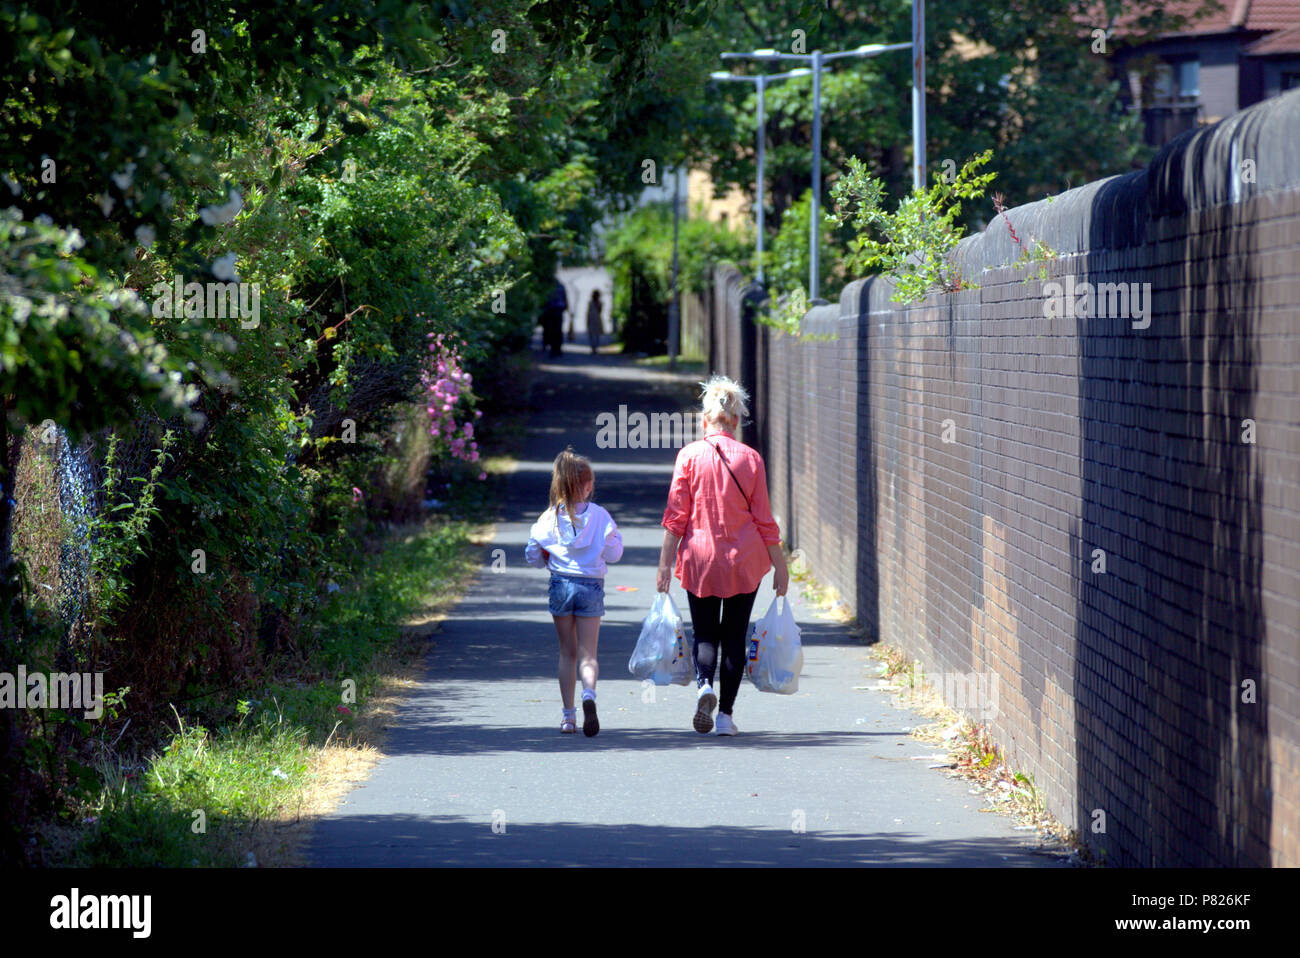 Madre e hija llevando bolsas de compras caminando por una calle estrecha soleado sombras de personas en primer plano el verano Foto de stock